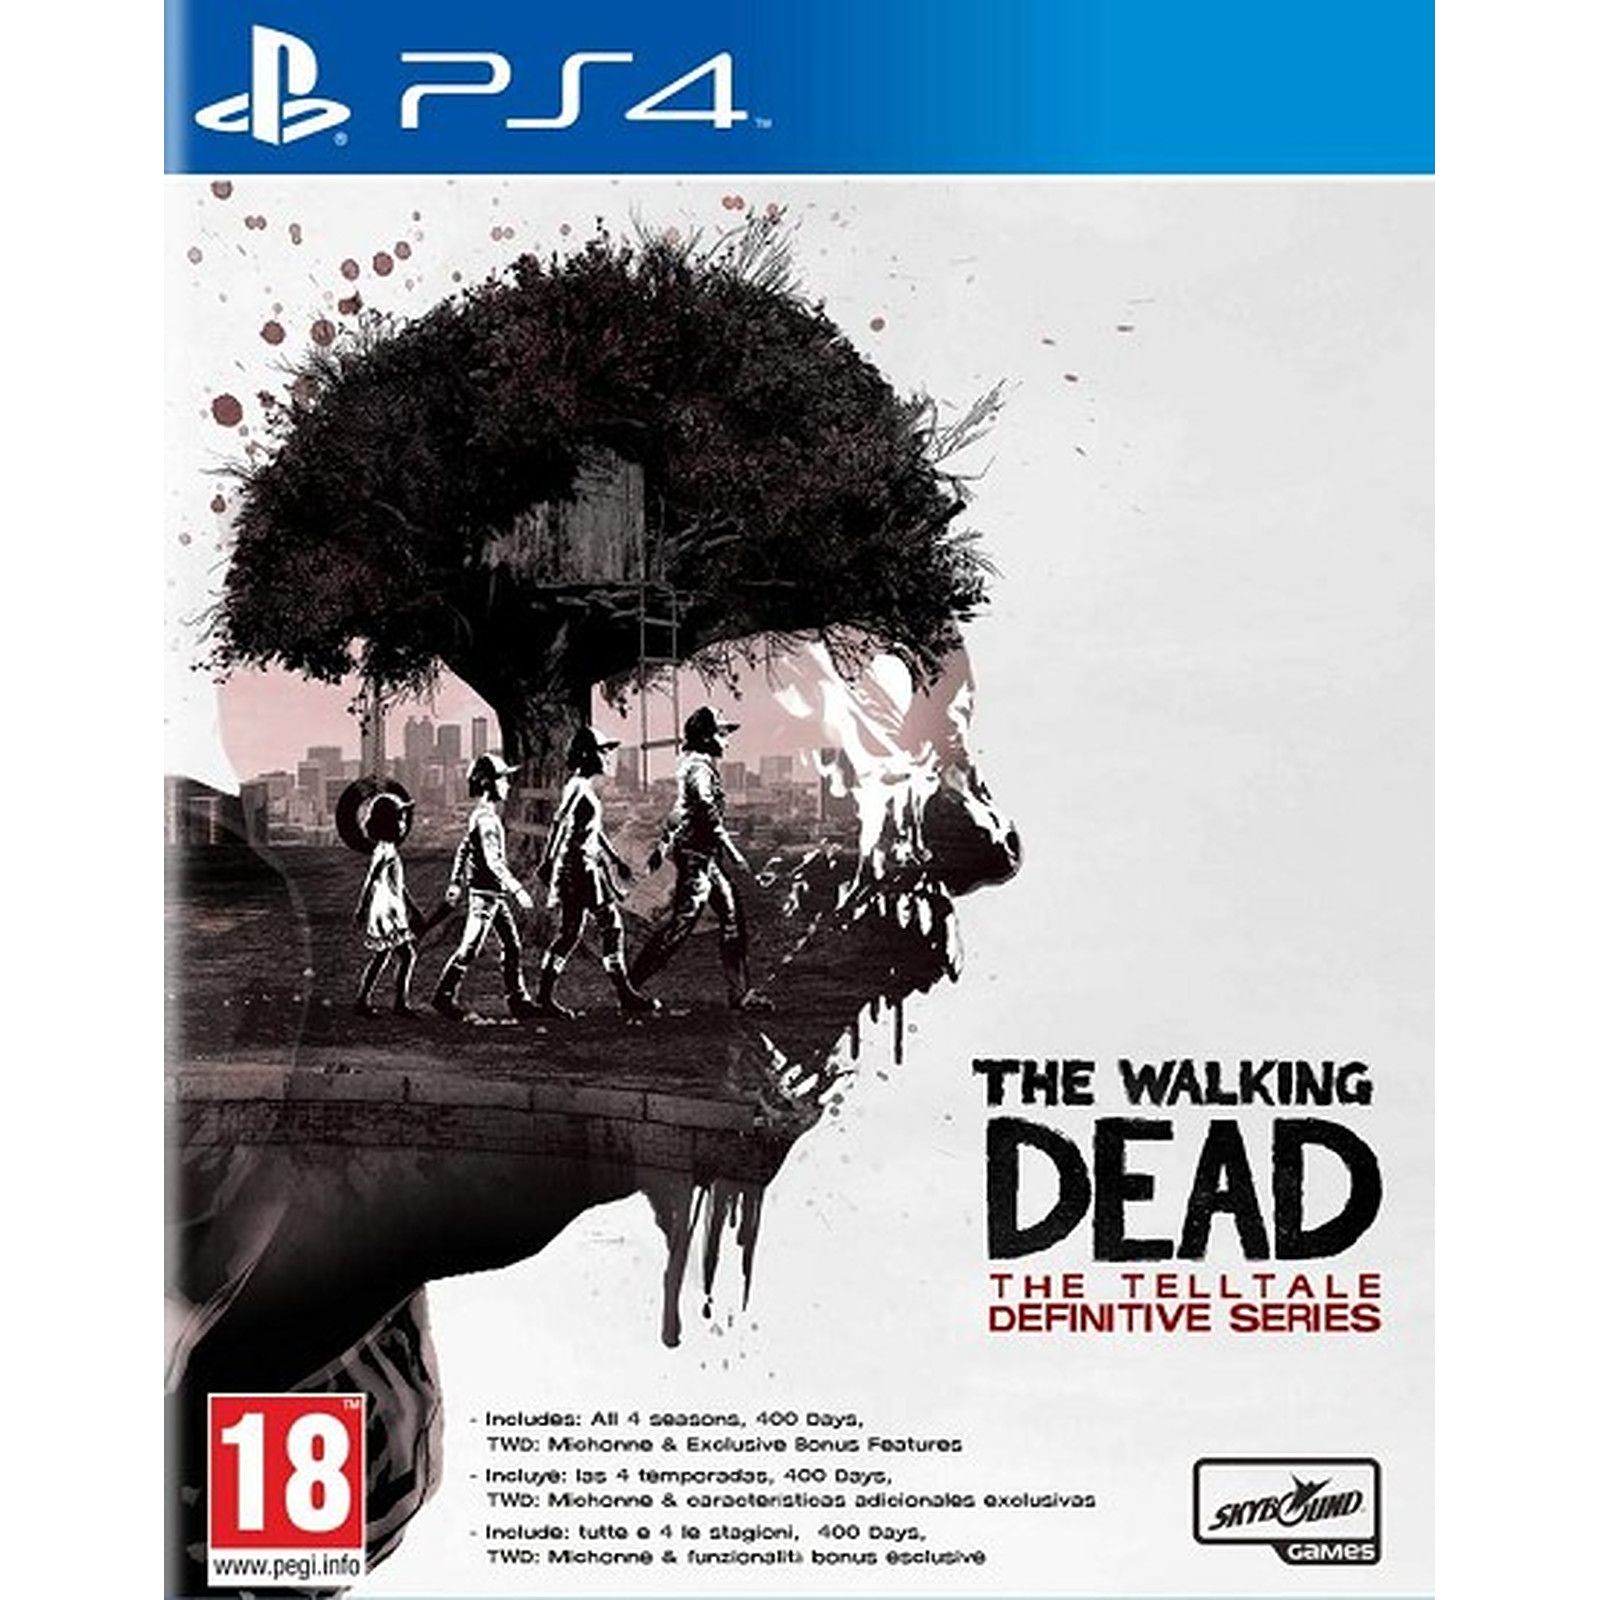 The Walking Dead The Telltale Definitive Series (PS4) - Jeux PS4 KOCH Media